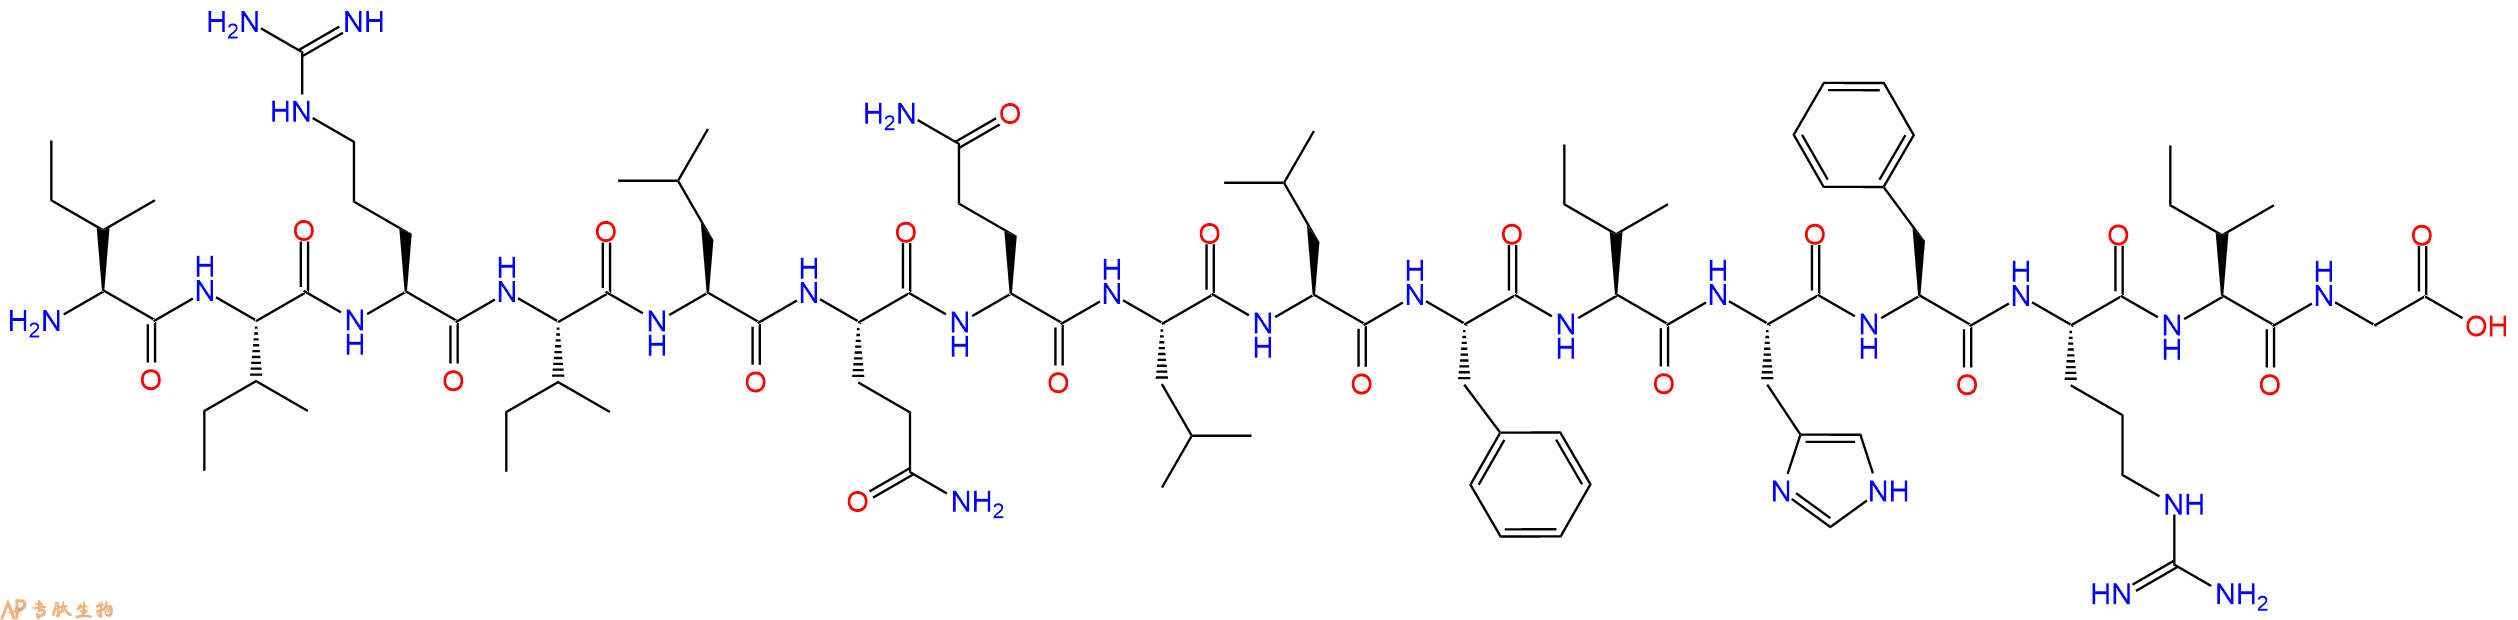 专肽生物产品十六肽IIRILQQLLFIHFRIG